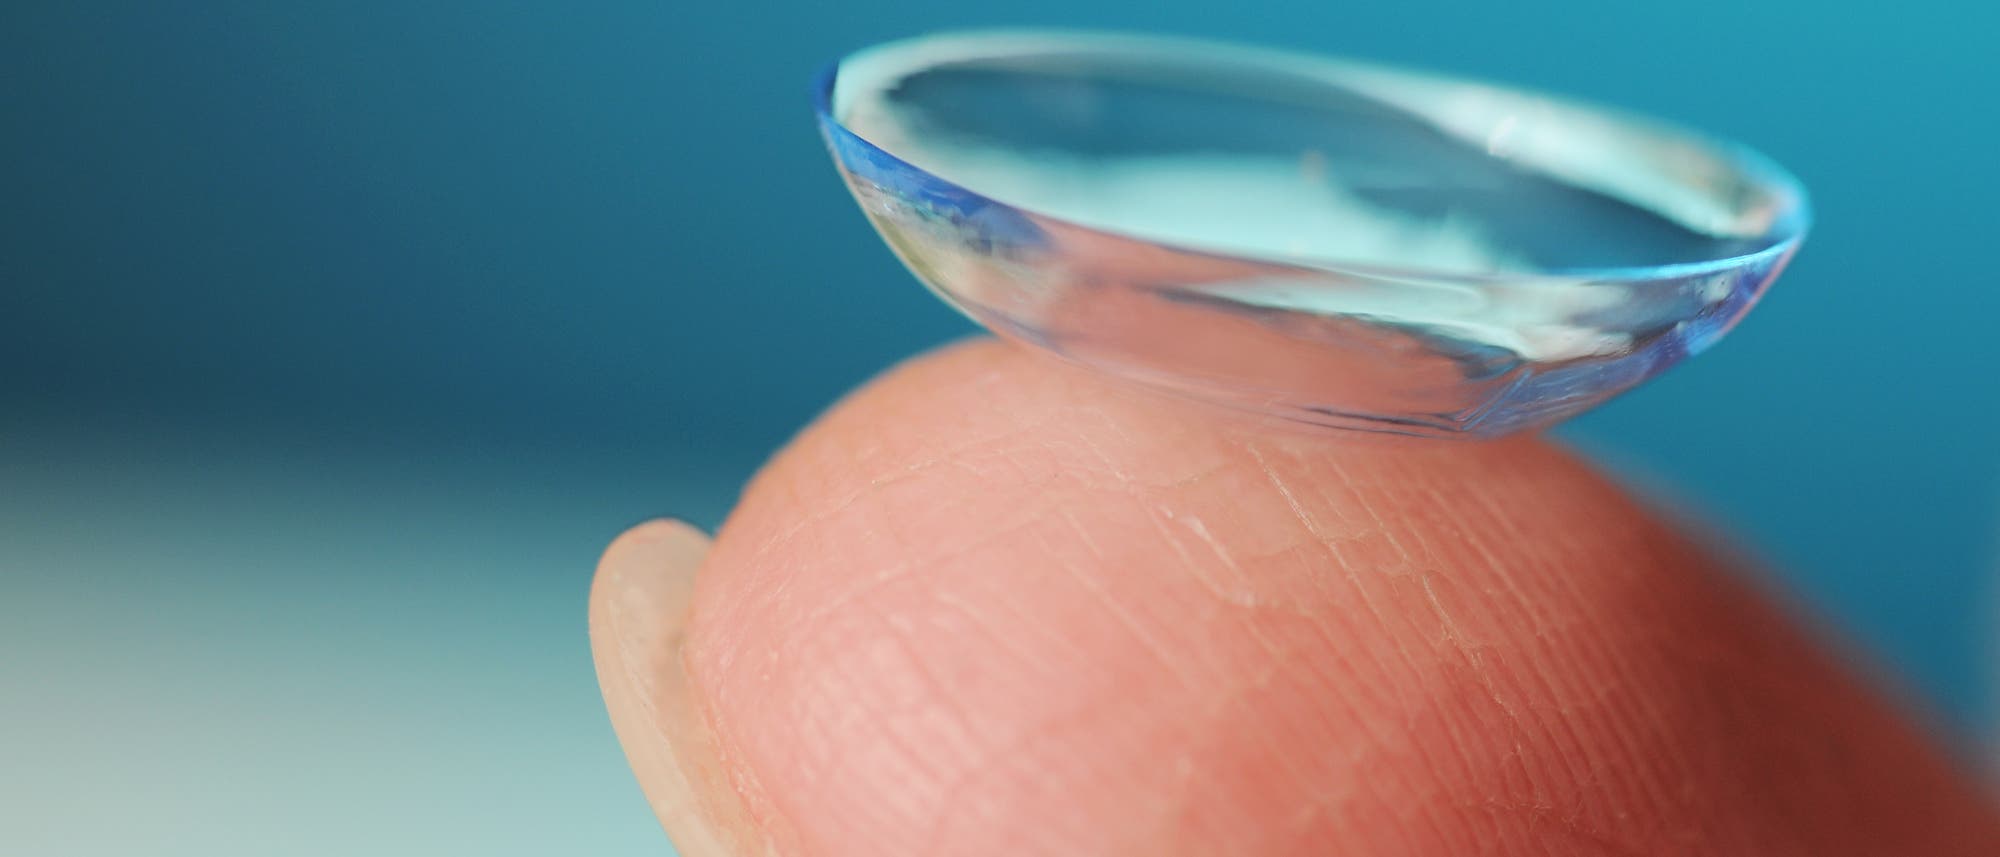 Kontaktlinse auf einem Finger